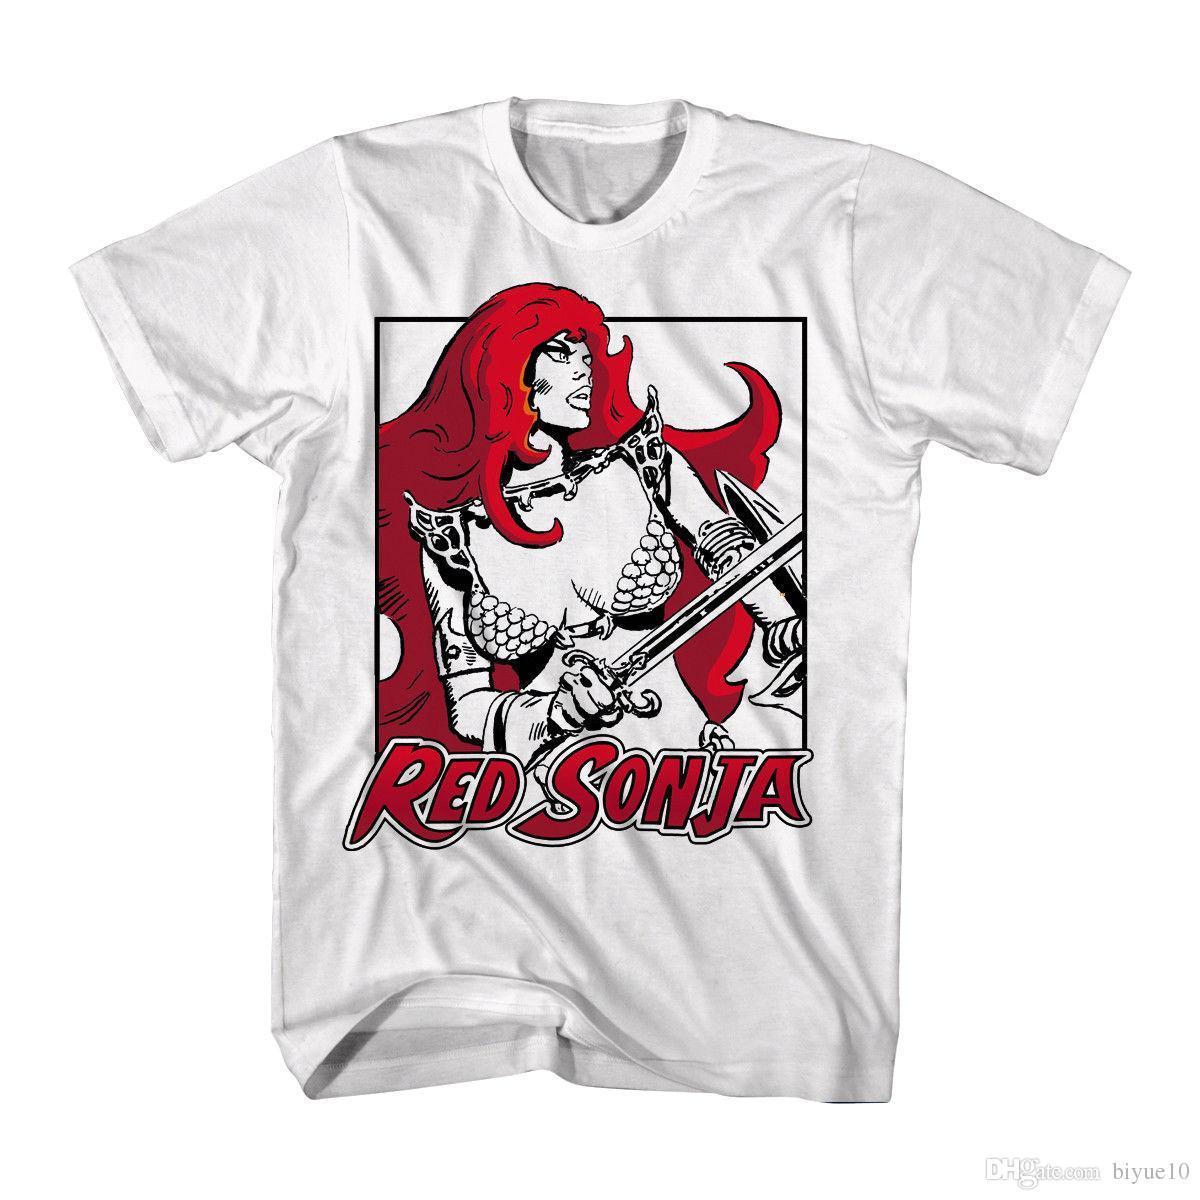 Red Flowing Hair Logo - Red Sonja Movie Black & White With Red Sonja'S Red Flowing Hair ...